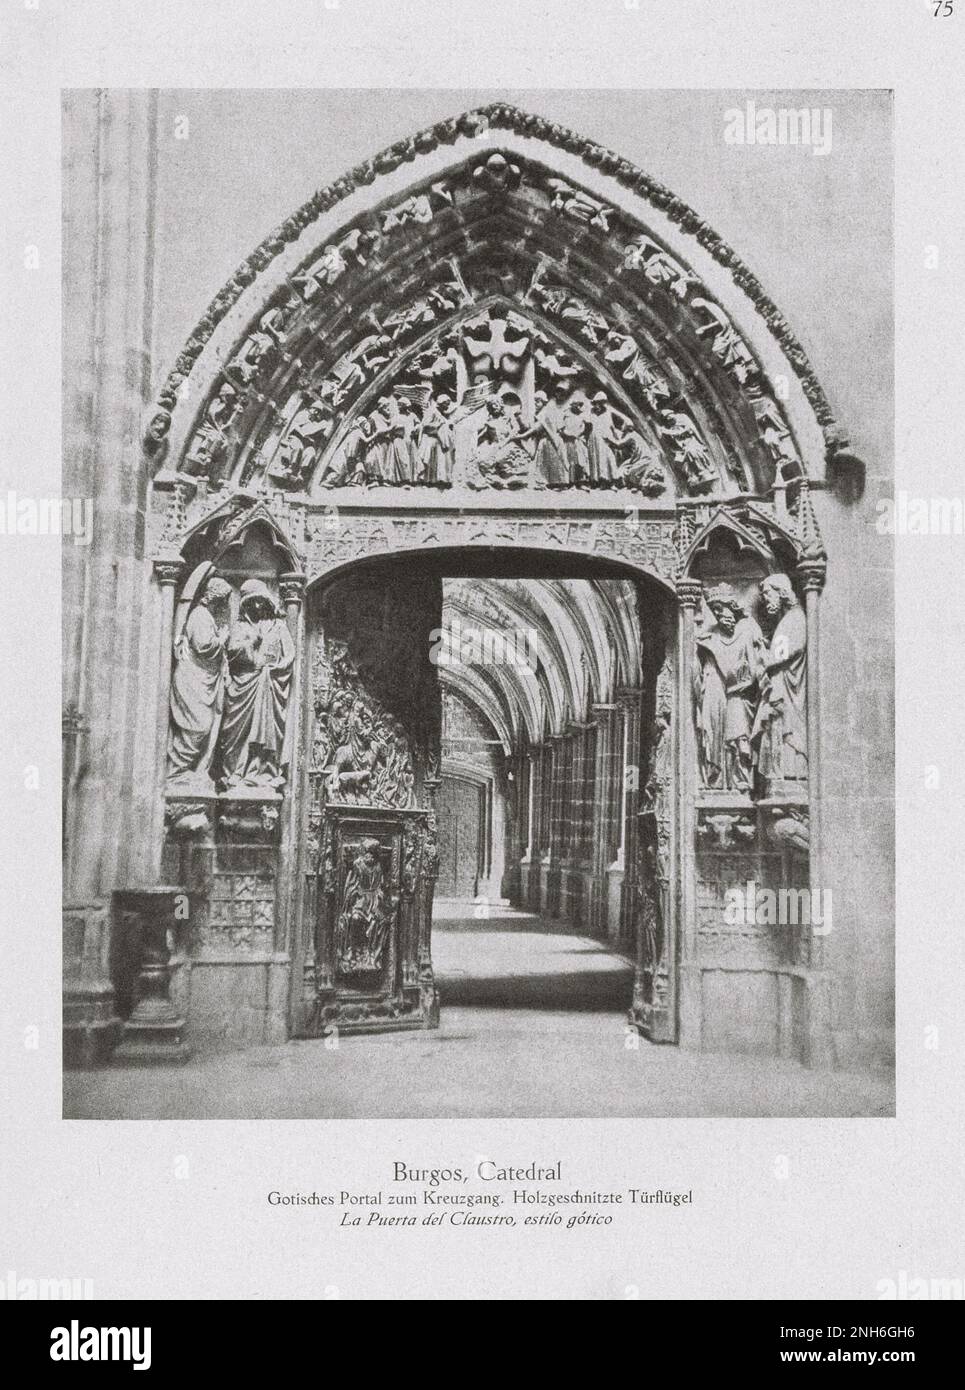 Architektur des alten Spaniens. Oldtimer-Foto der Kathedrale von Burgos (Kathedrale der Heiligen Maria von Burgos). Das gotische Portal zum Kloster. Holzgeschnitzte Türblätter. Stockfoto